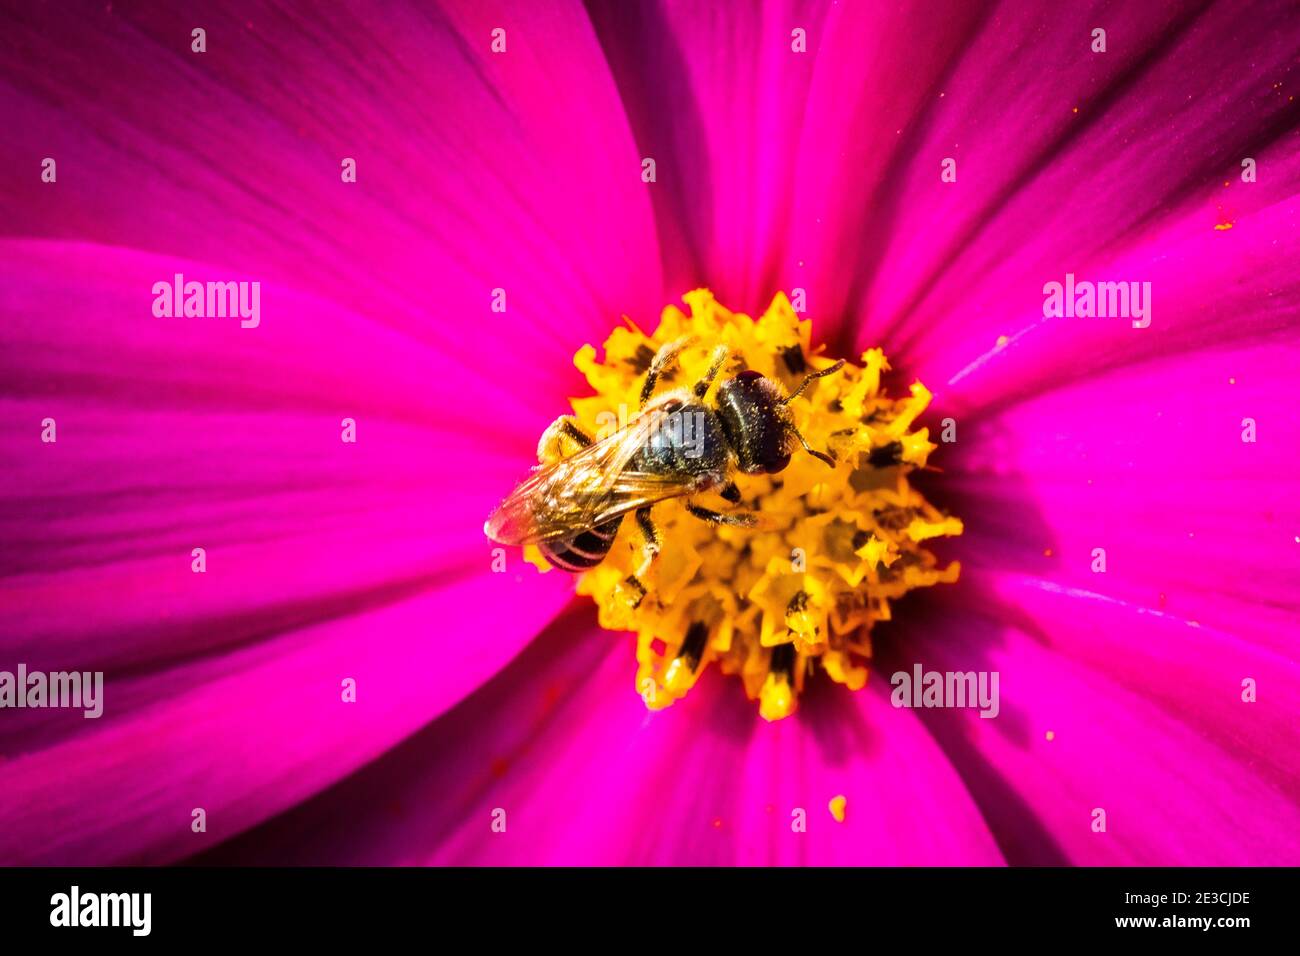 Une fleur magenta brillante a attiré une petite abeille à son centre chargé de pollen. Prise de vue avec un objectif macro. Banque D'Images